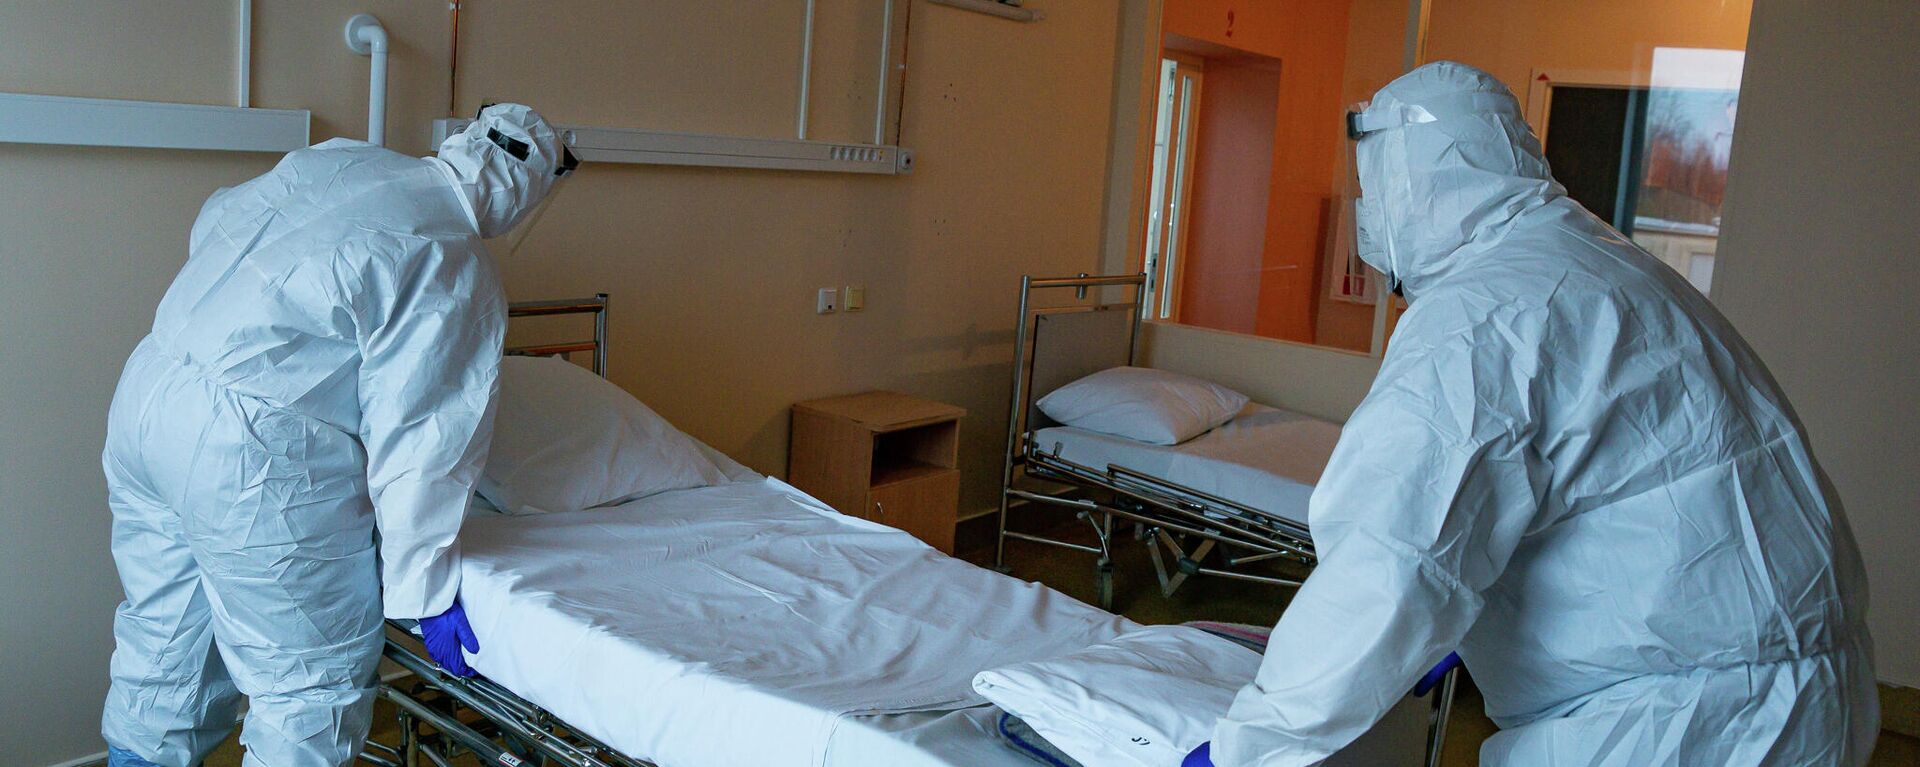 Медицинские работники готовят палату к приему пациентов с COVID-19 в Центре легочных заболеваний и туберкулеза в Даугавпилсе - Sputnik Латвия, 1920, 16.01.2022